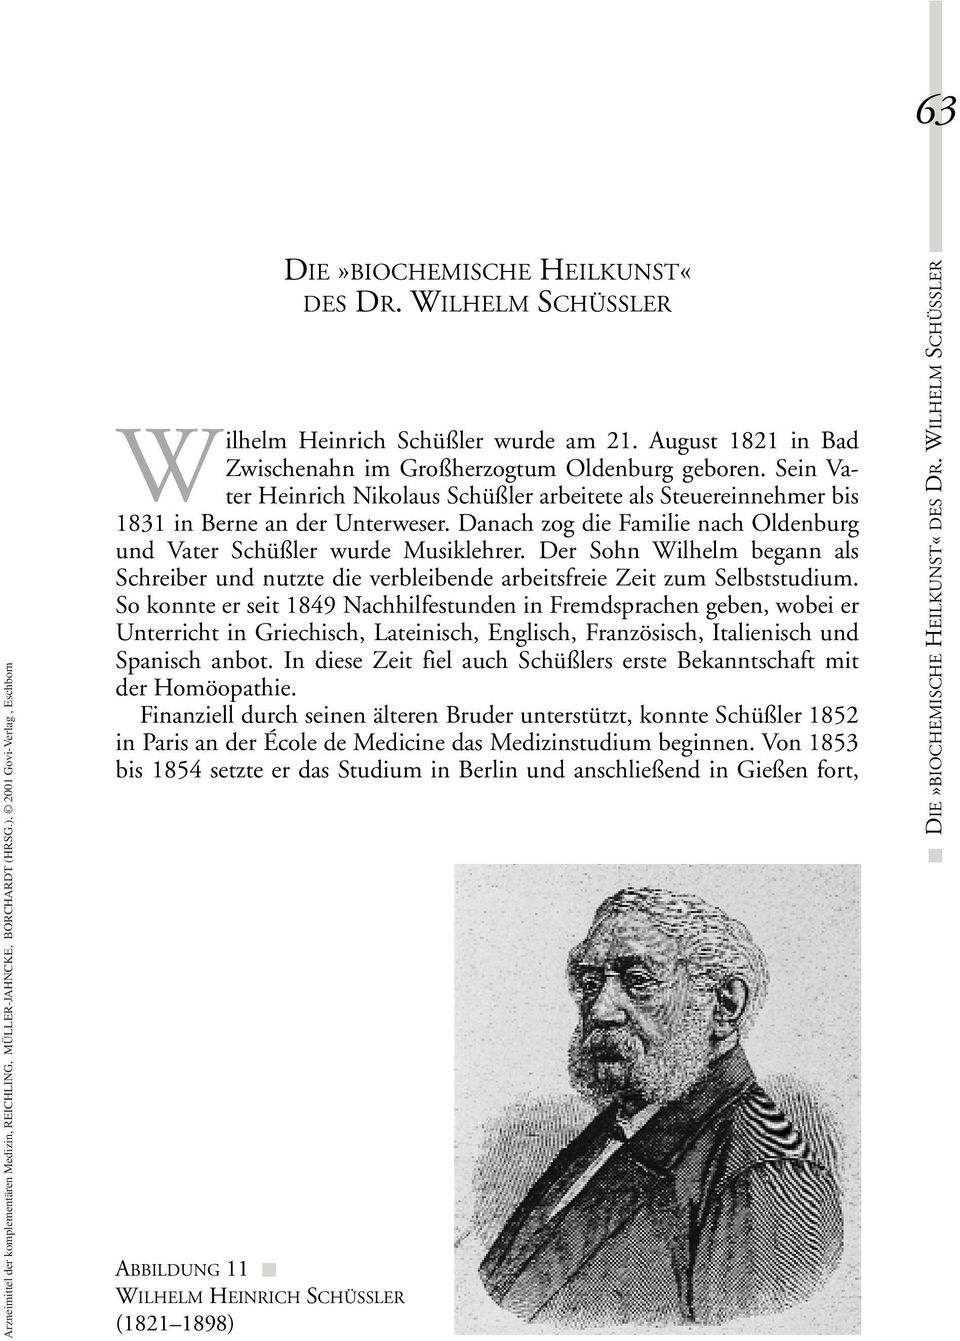 Sein Vater Heinrich Nikolaus Schüßler arbeitete als Steuereinnehmer bis 1831 in Berne an der Unterweser. Danach zog die Familie nach Oldenburg und Vater Schüßler wurde Musiklehrer.